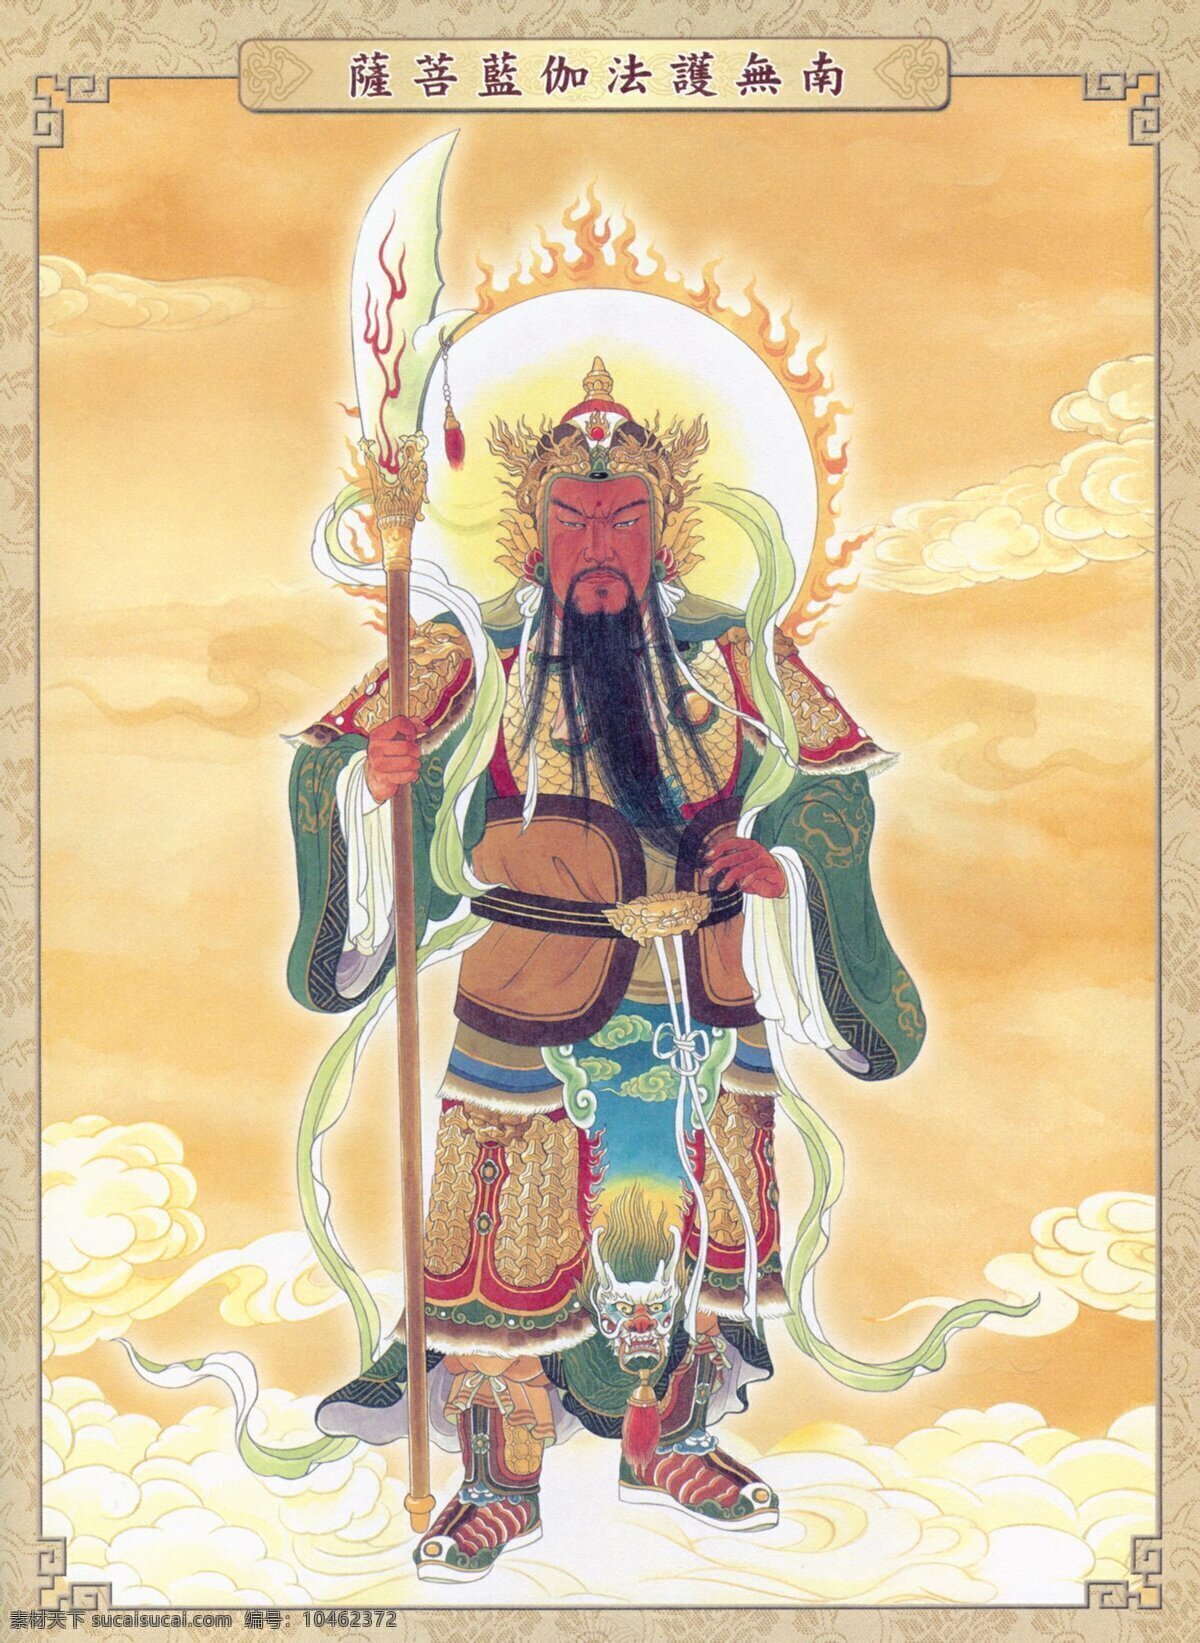 伽蓝菩萨 韦驮菩萨 护法 佛教 汉传 宗教信仰 汉传佛教 文化艺术 传统文化